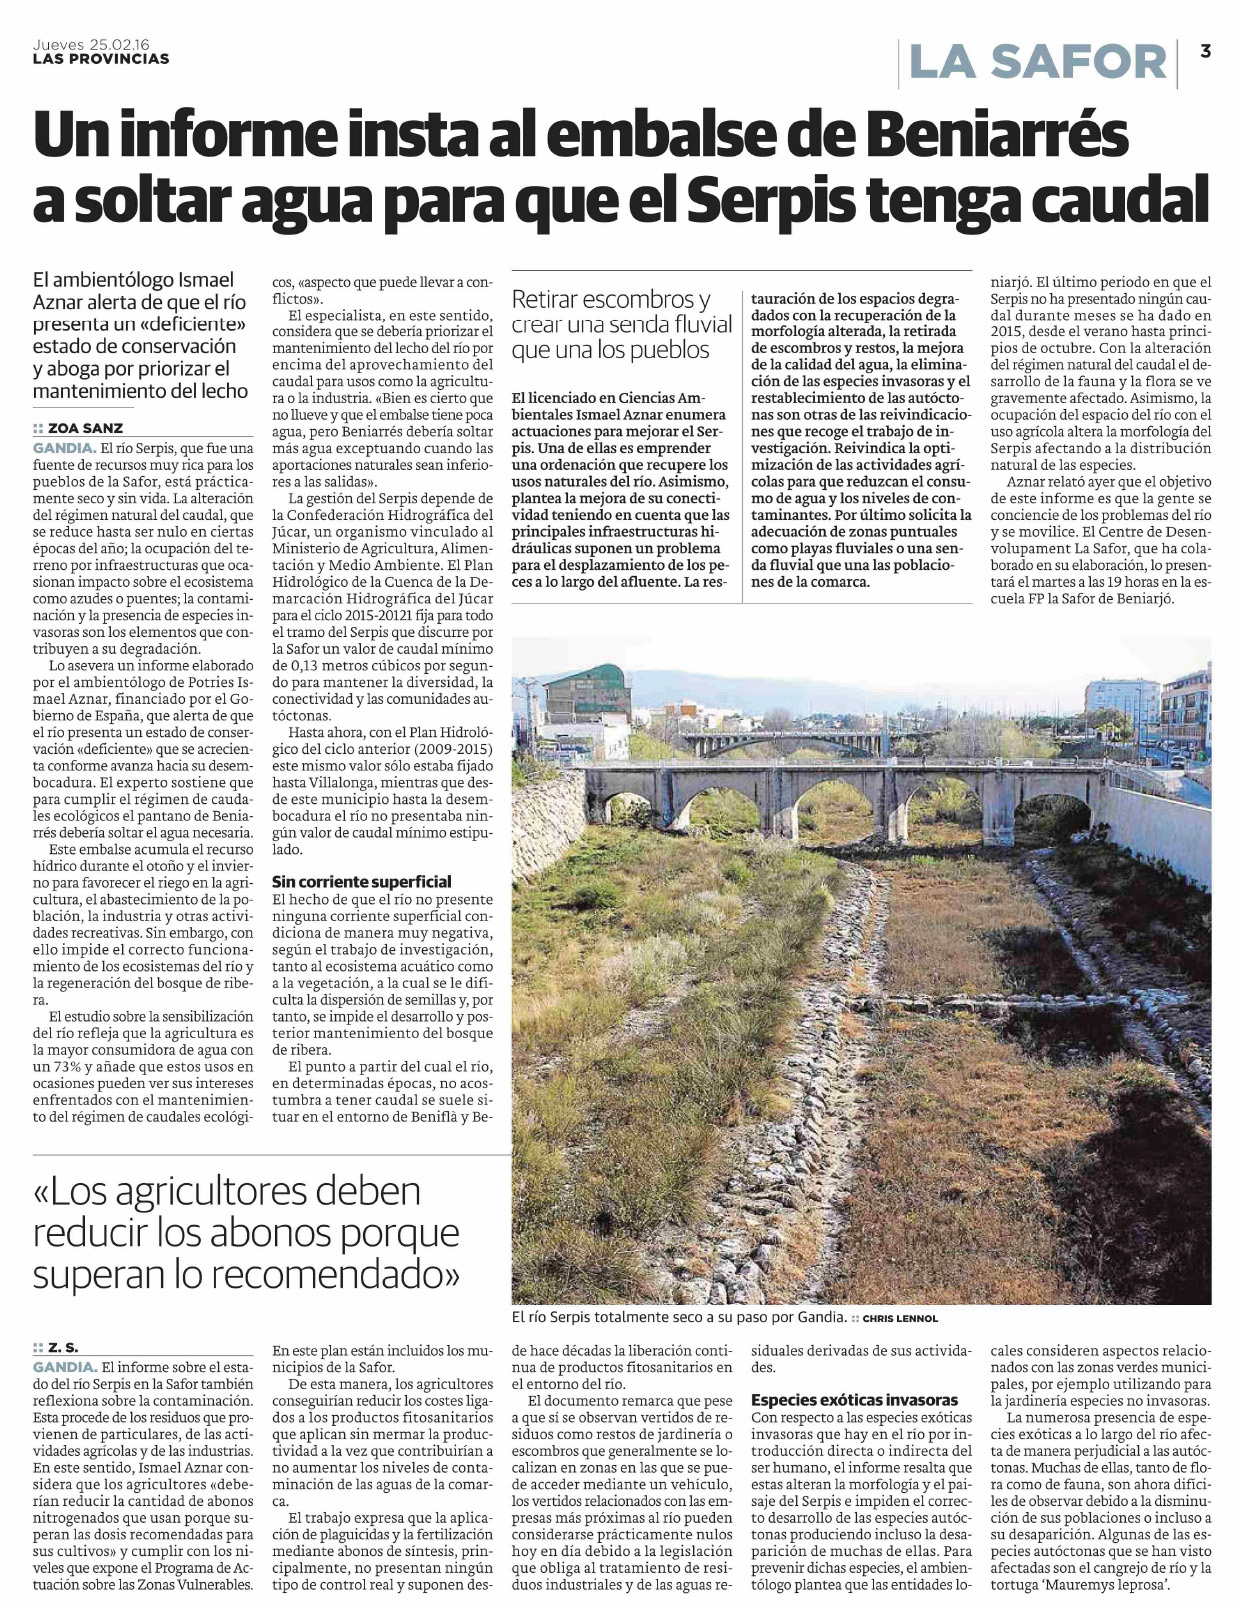 Pagina del periódico de la Safor con  informe sobre el río Serpis (Valencia)